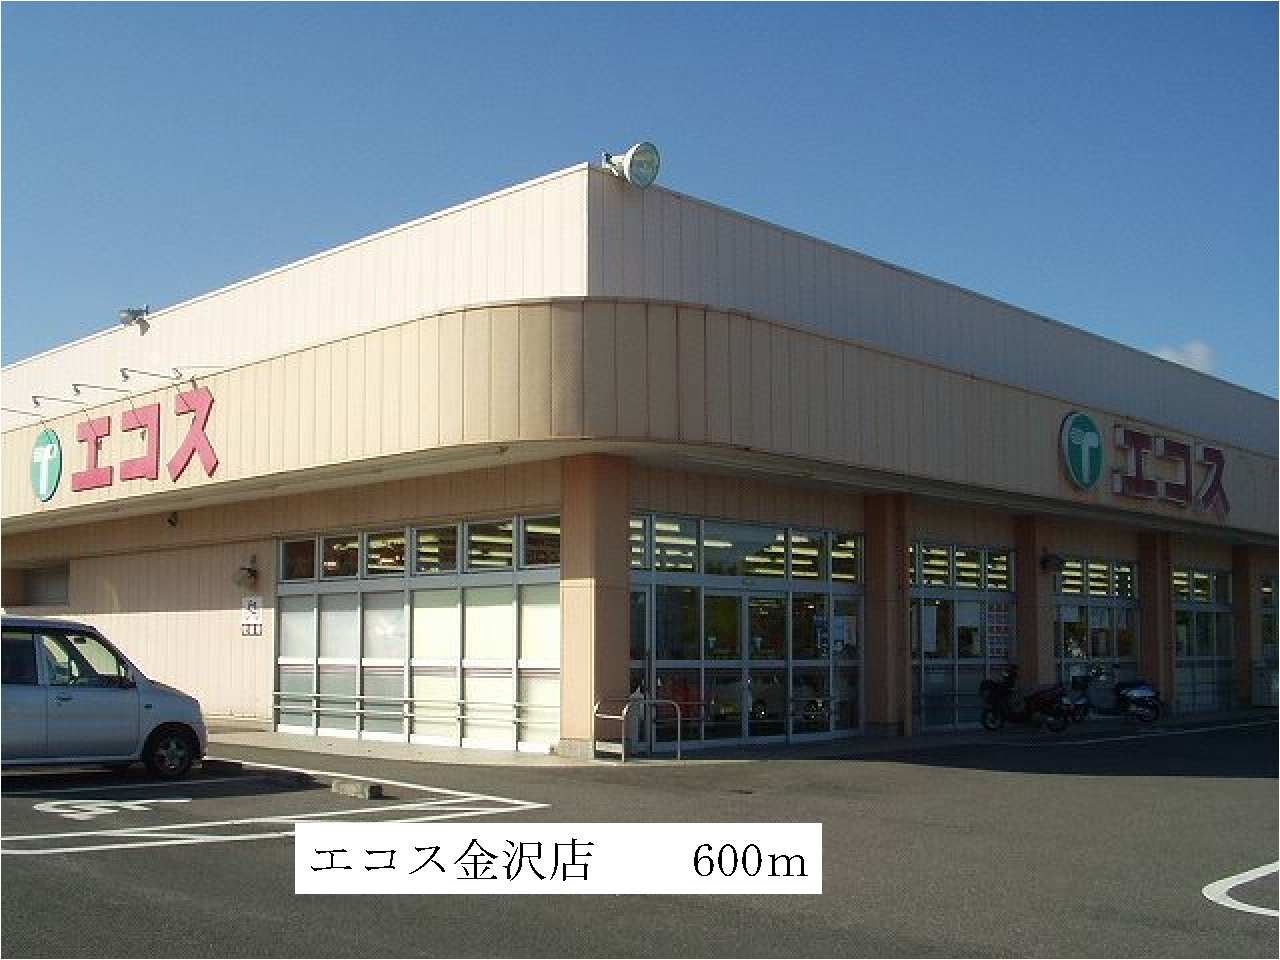 Supermarket. Ecos Kanazawa store up to (super) 600m